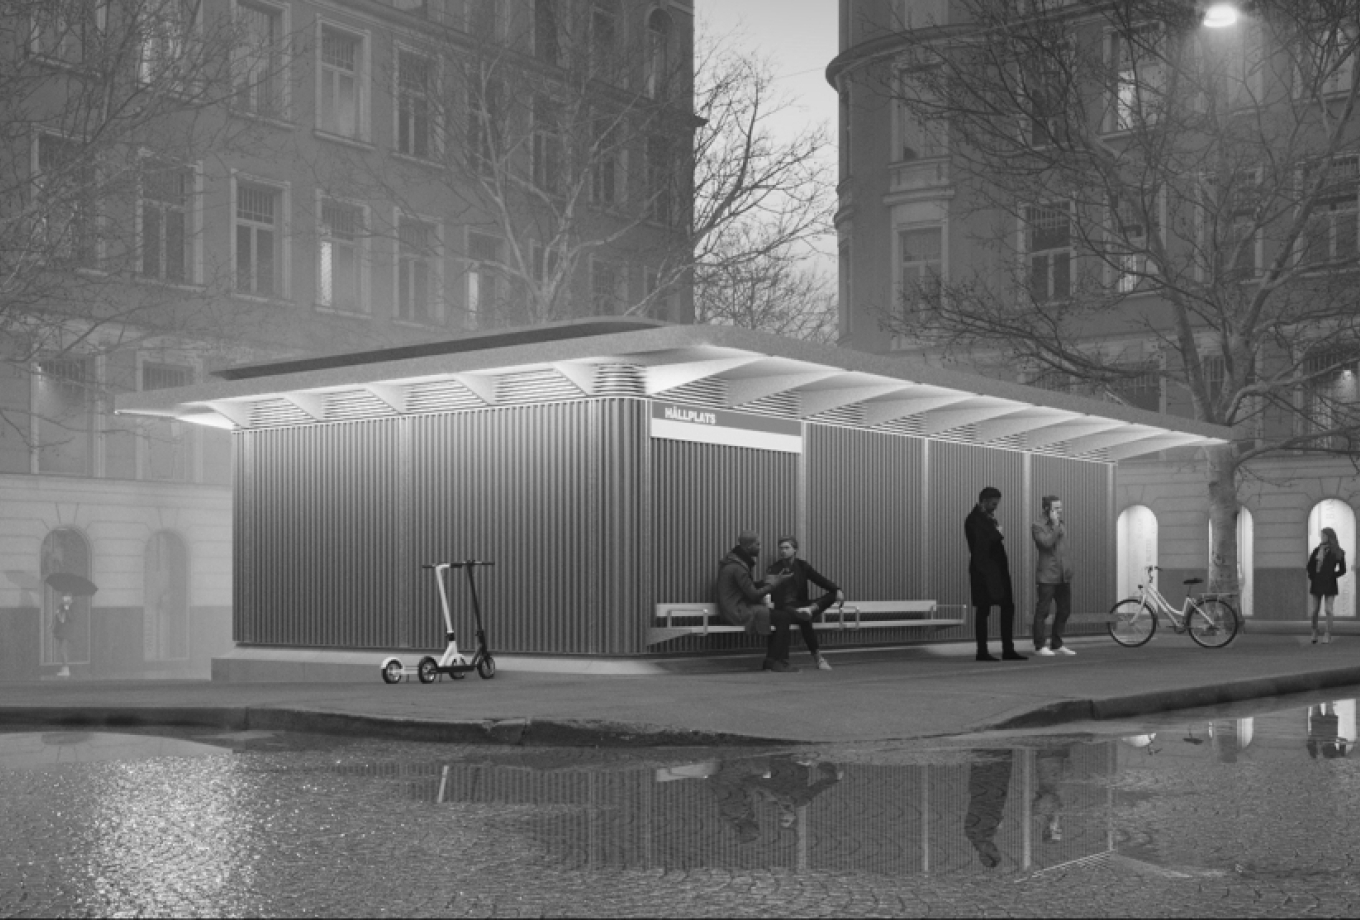 gottlieb-paludan-architects-netstationer-stockholm_i_byen_aften_1